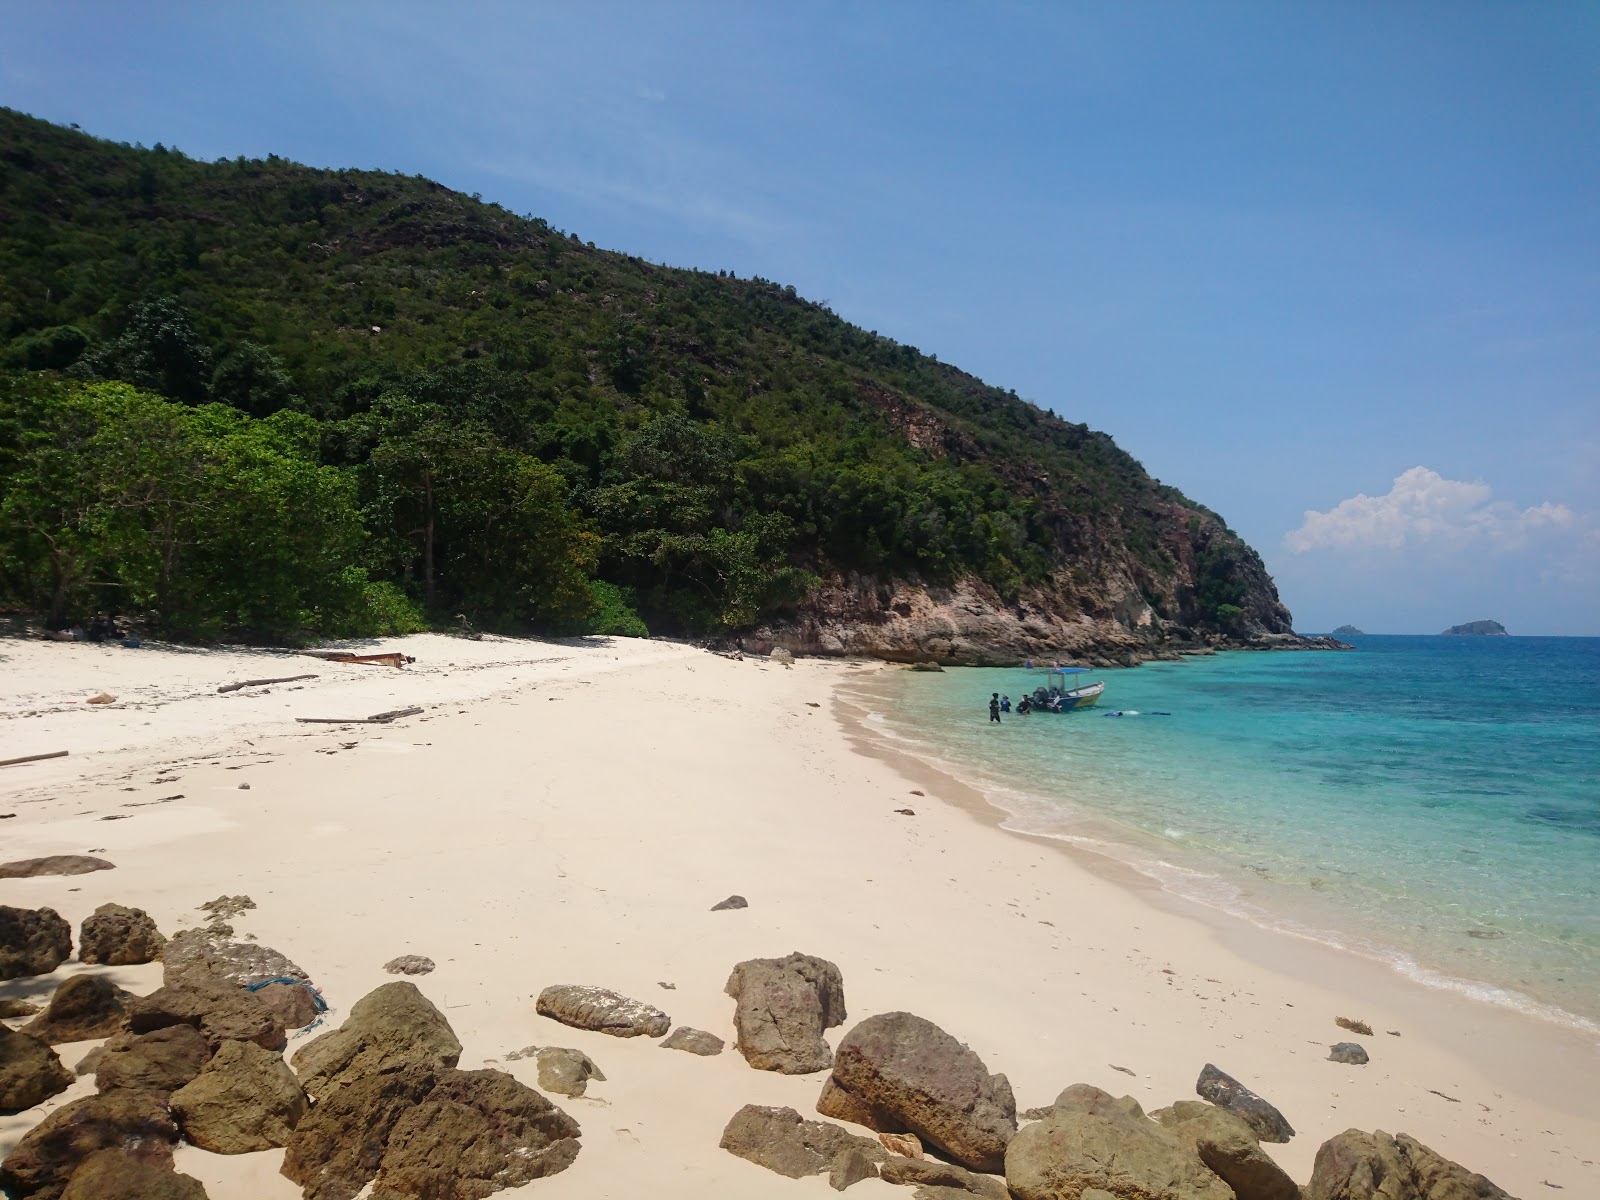 Fotografie cu Pulau Sembilang cu o suprafață de nisip alb